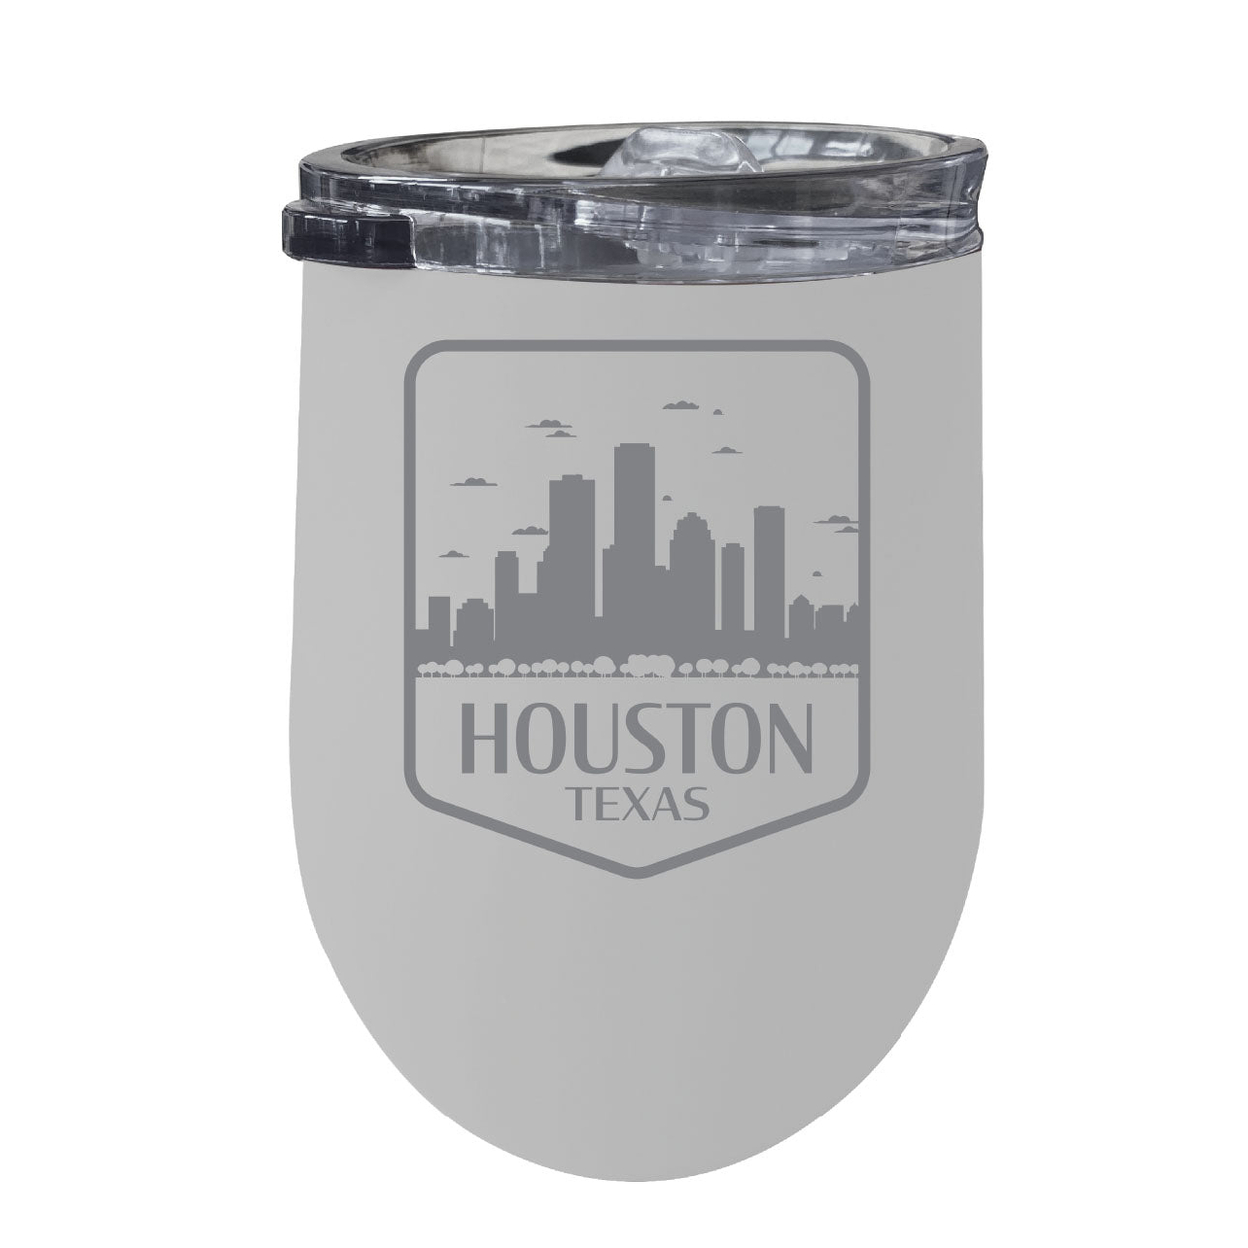 Houston Texas Souvenir 12 Oz Engraved Insulated Wine Stainless Steel Tumbler - White,,Single Unit